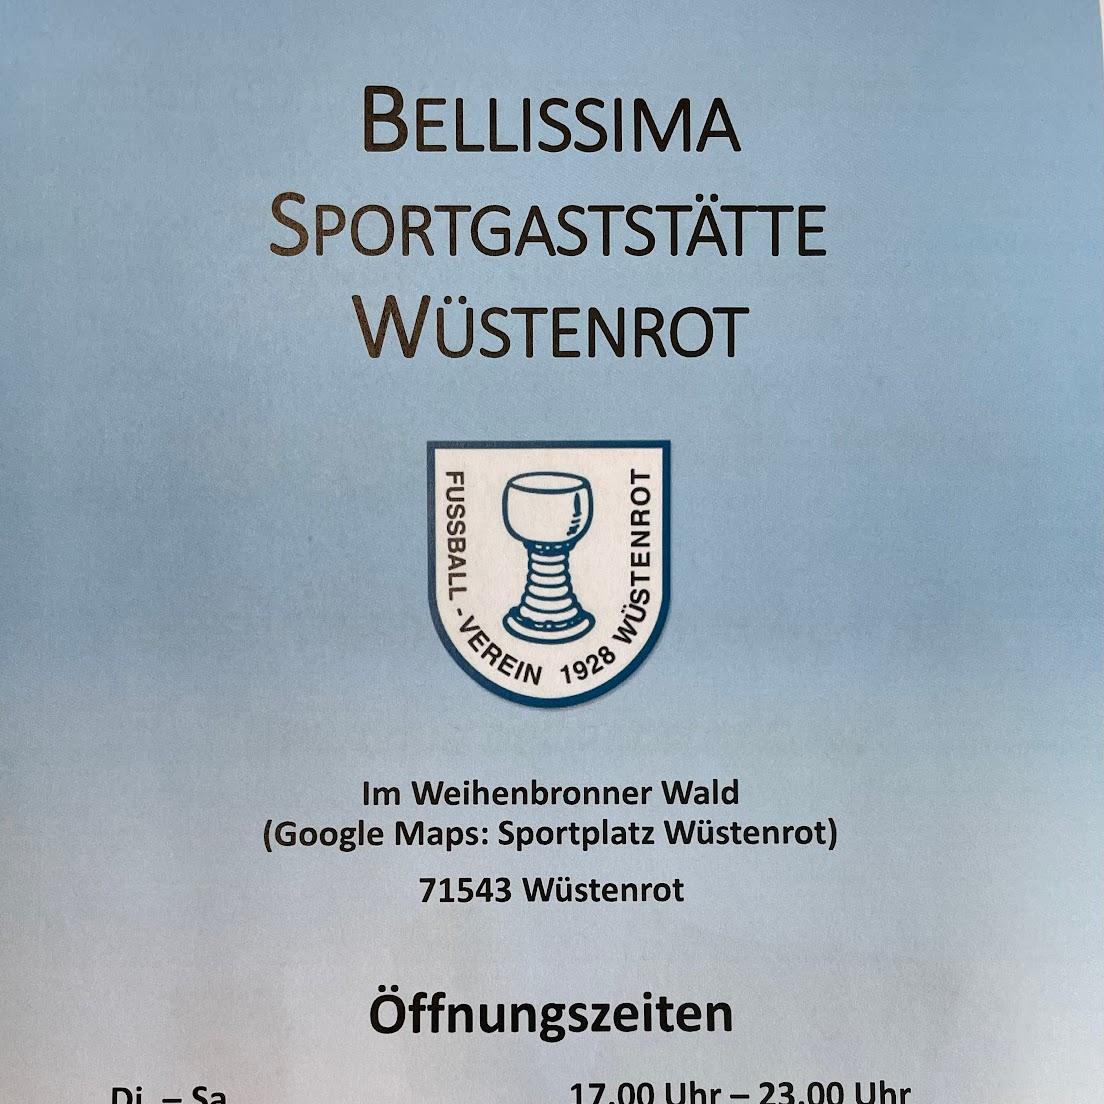 Restaurant "Sportgaststätte Bellissima  im Sportheim des FV" in Wüstenrot